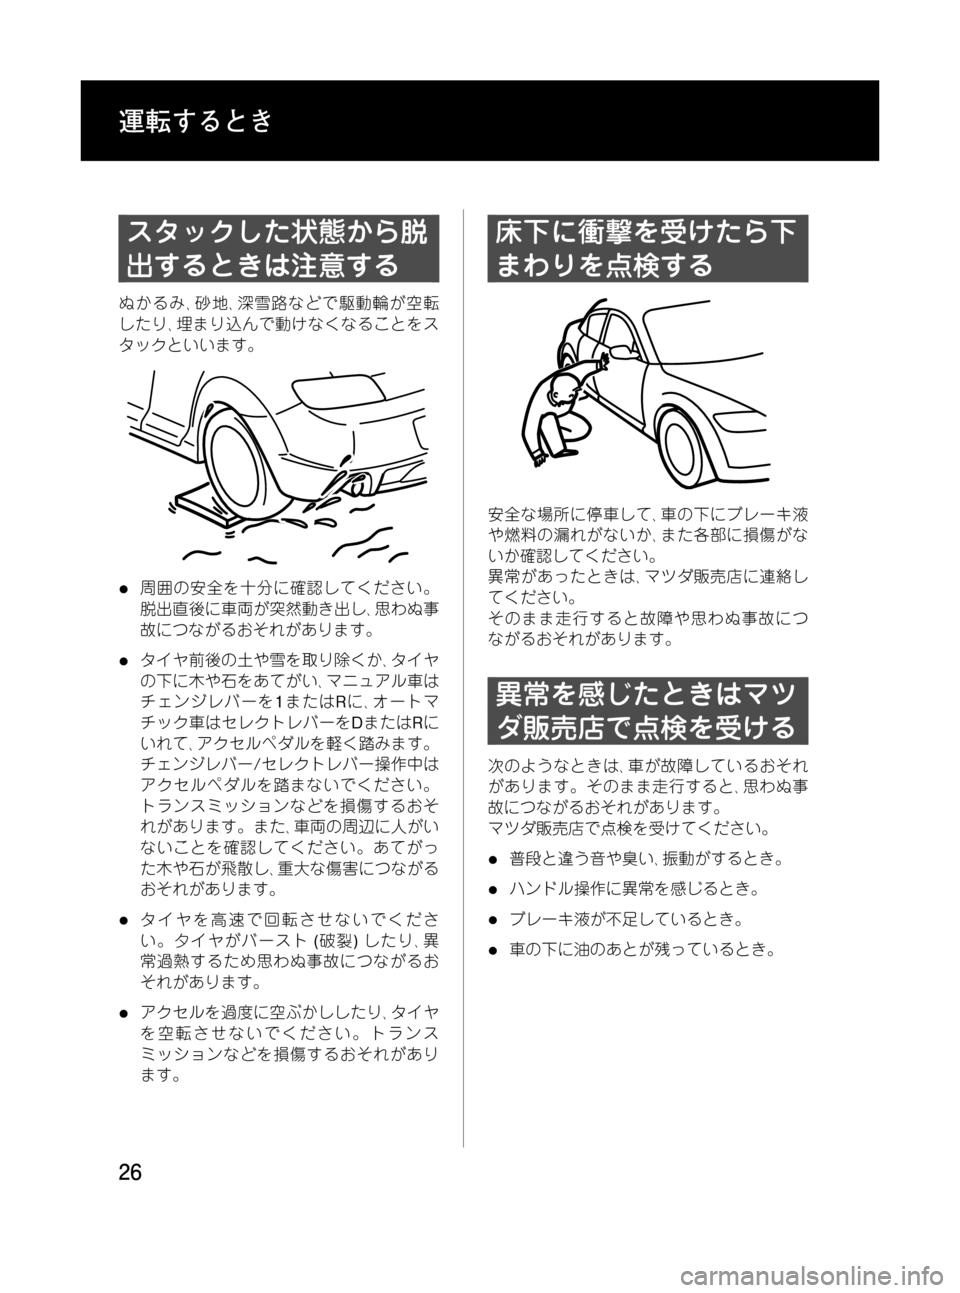 MAZDA MODEL RX 8 2008  取扱説明書 (in Japanese) Black plate (26,1)
スタックした状態から脱
出するときは注意する
ぬかるみ､砂地､深雪路などで駆動輪が空転
したり､埋まり込んで動けなくなること�